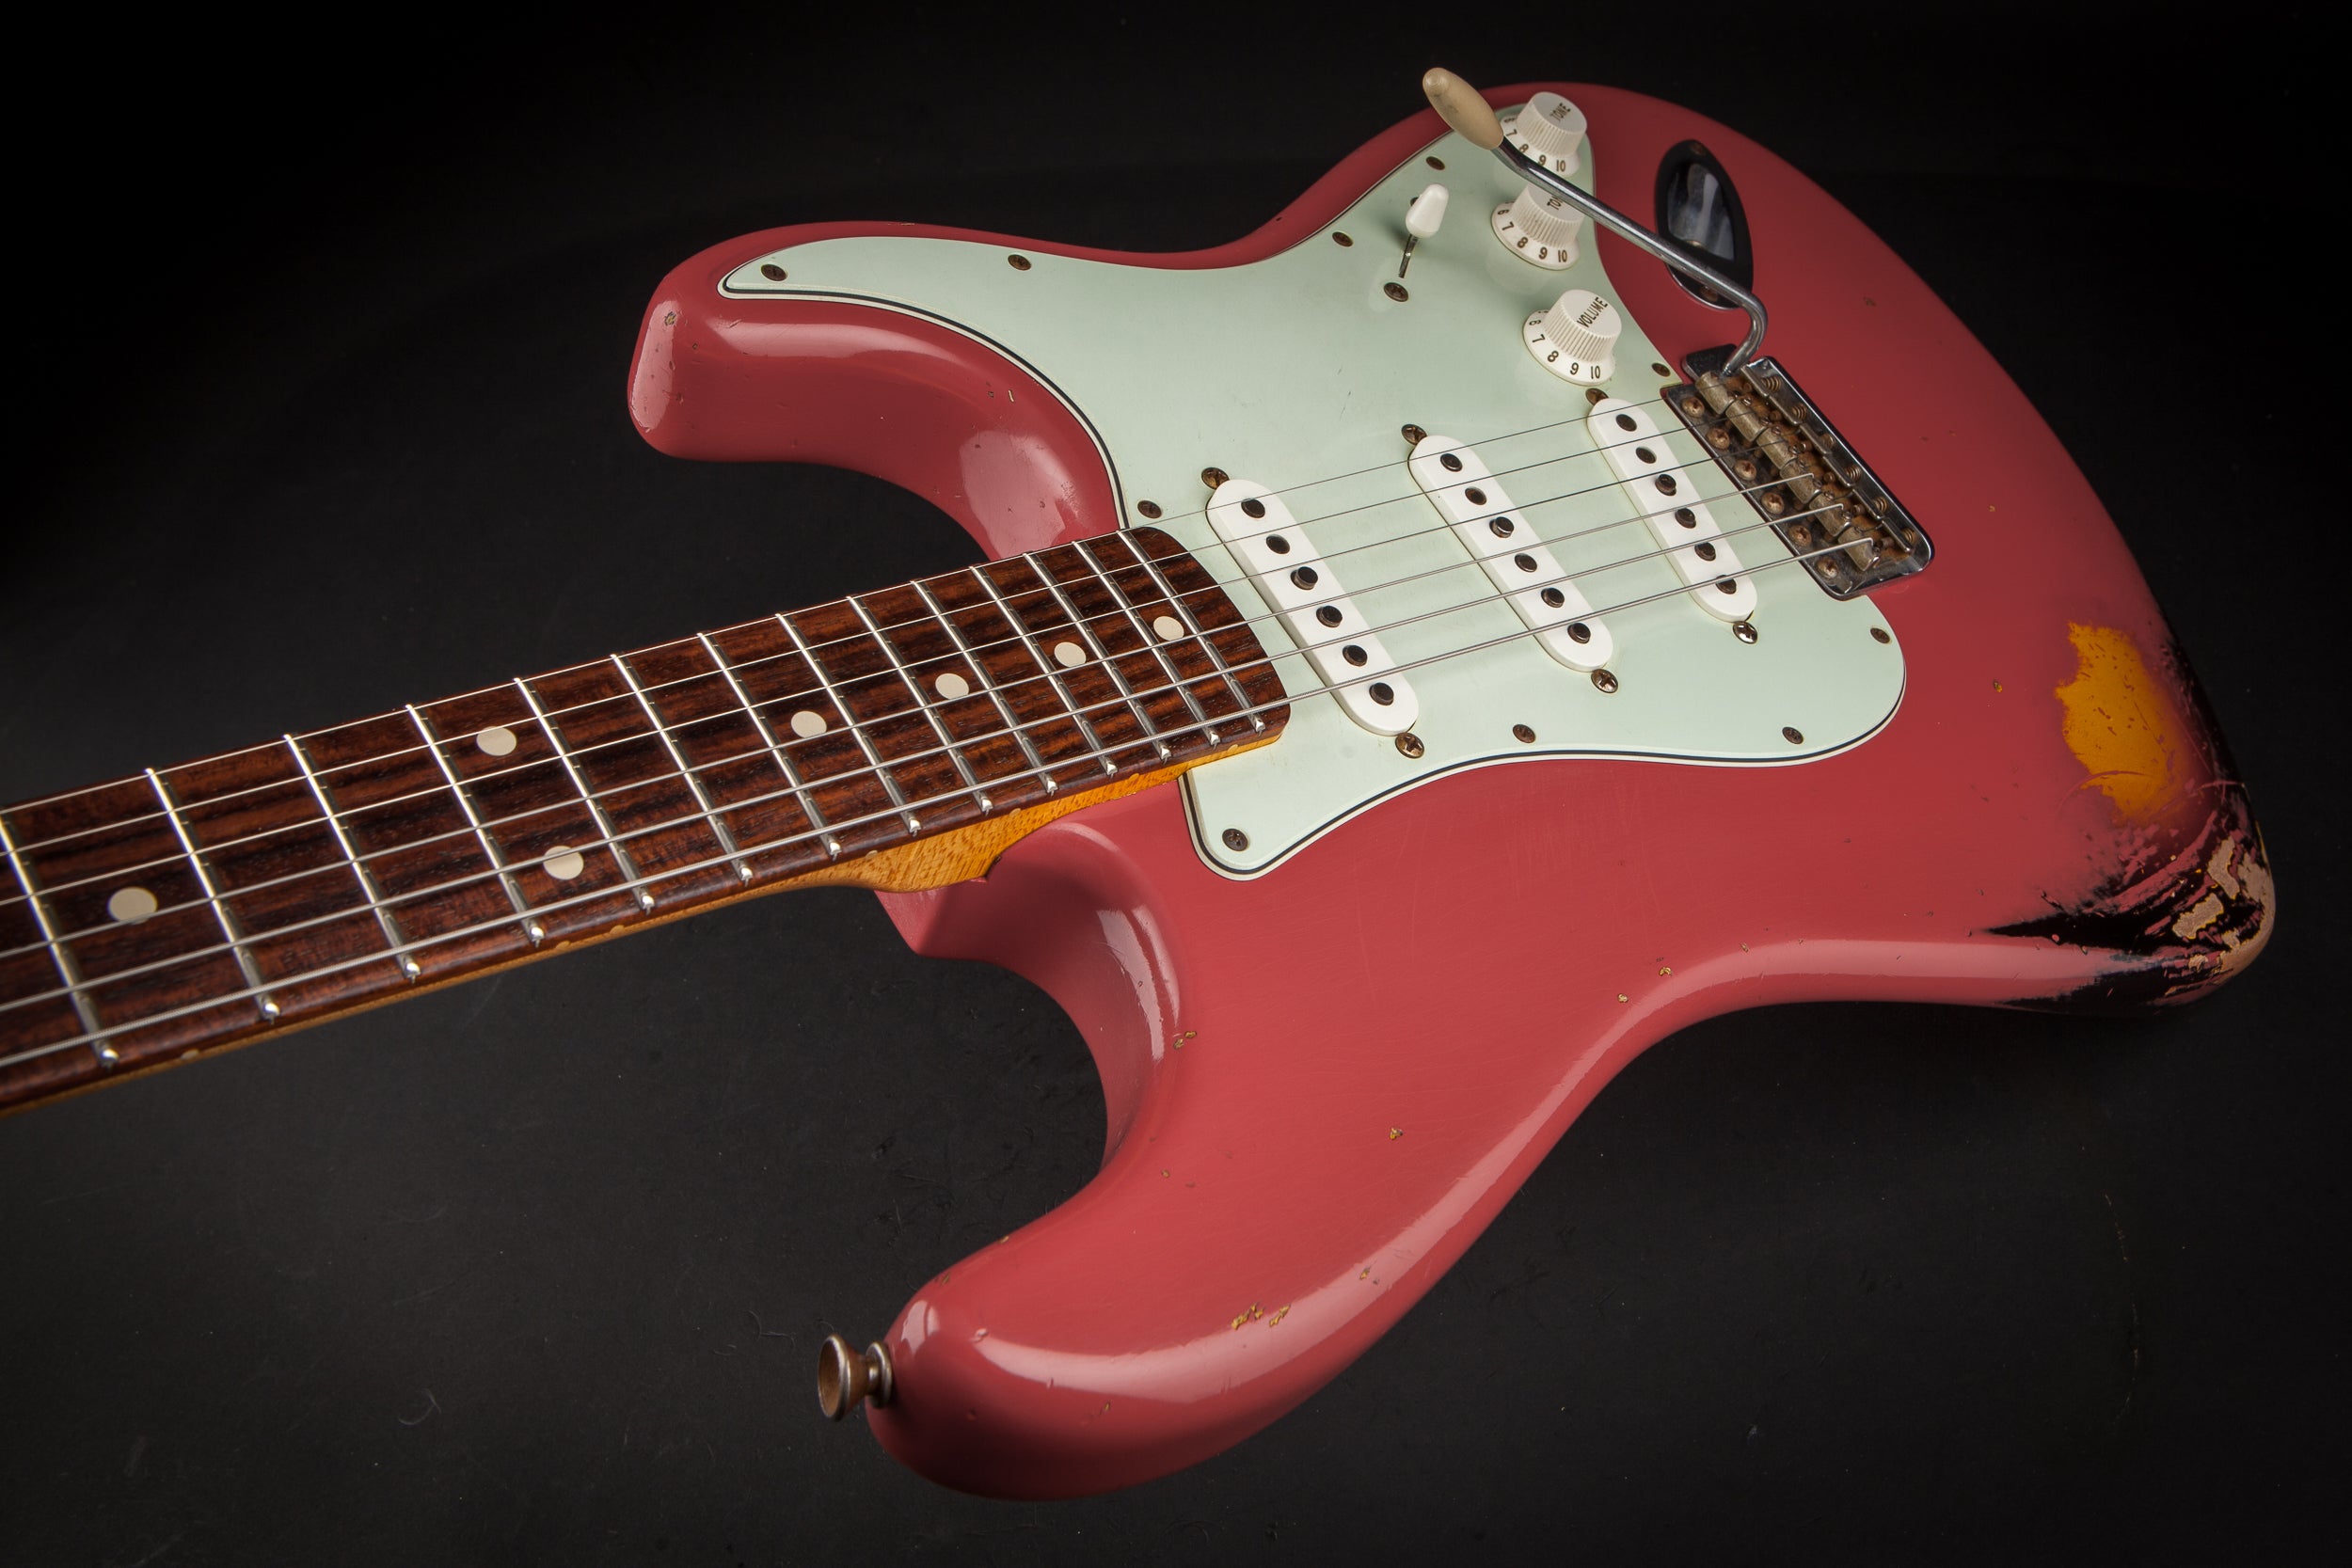 Fender Custom Shop: Stratocaster '60 Relic Fiesta Red Over Sunburst #R71995